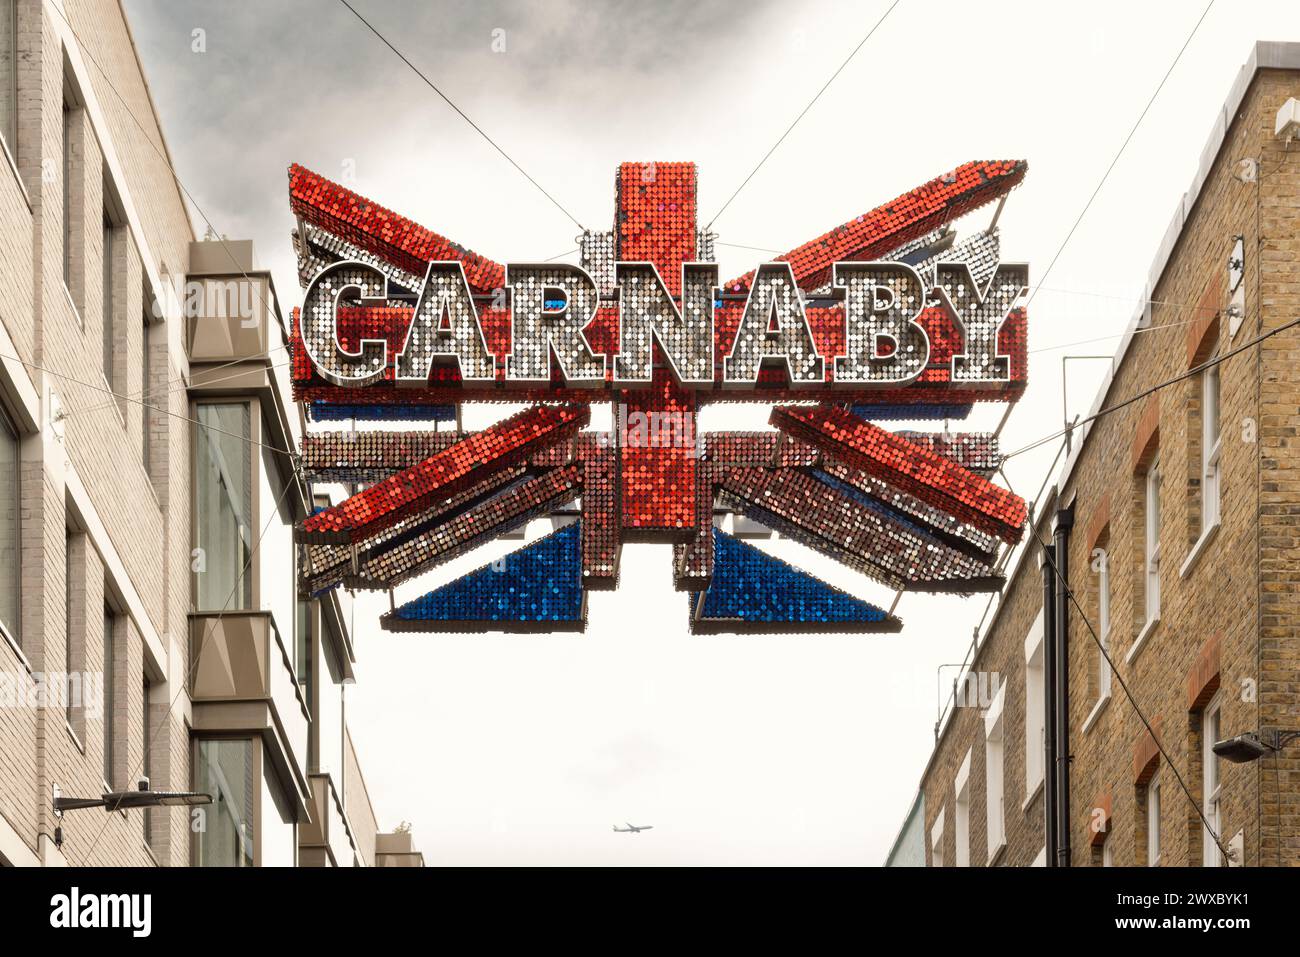 La scintillante bandiera Union sopra Carnaby Street è un simbolo della cultura e della moda britannica, con i suoi dischi a specchio che riflettono l'atmosfera vibrante della zona. Foto Stock